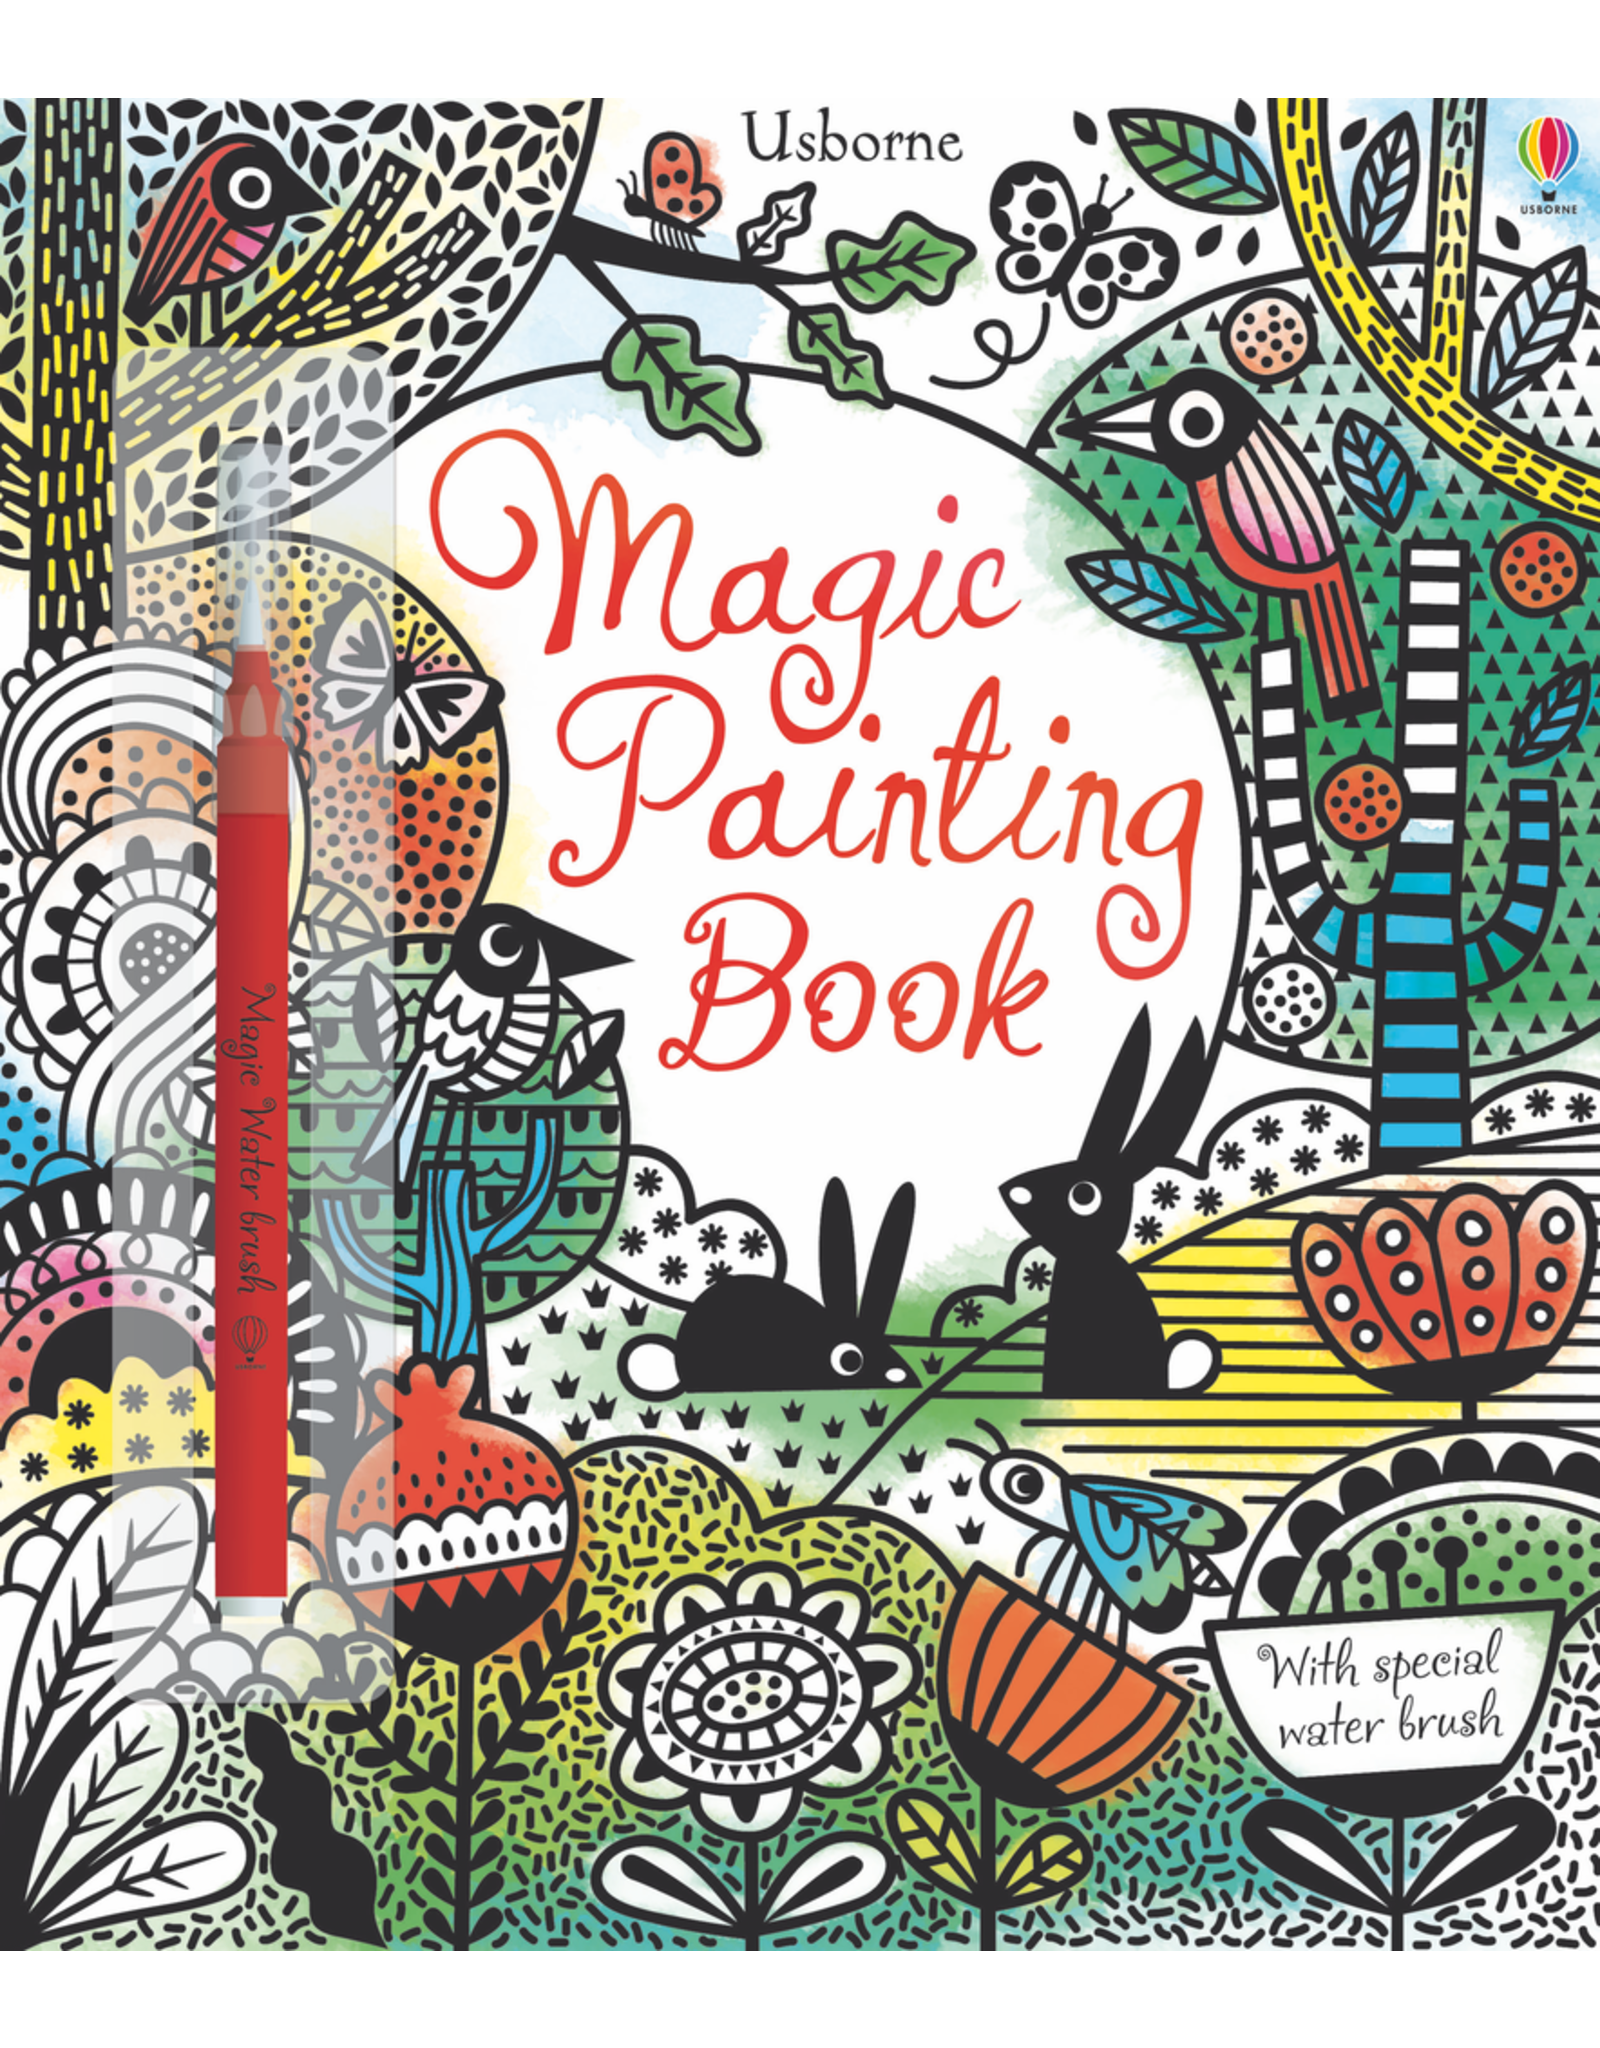 Usborne Fairy Gardens Magic Painting Book